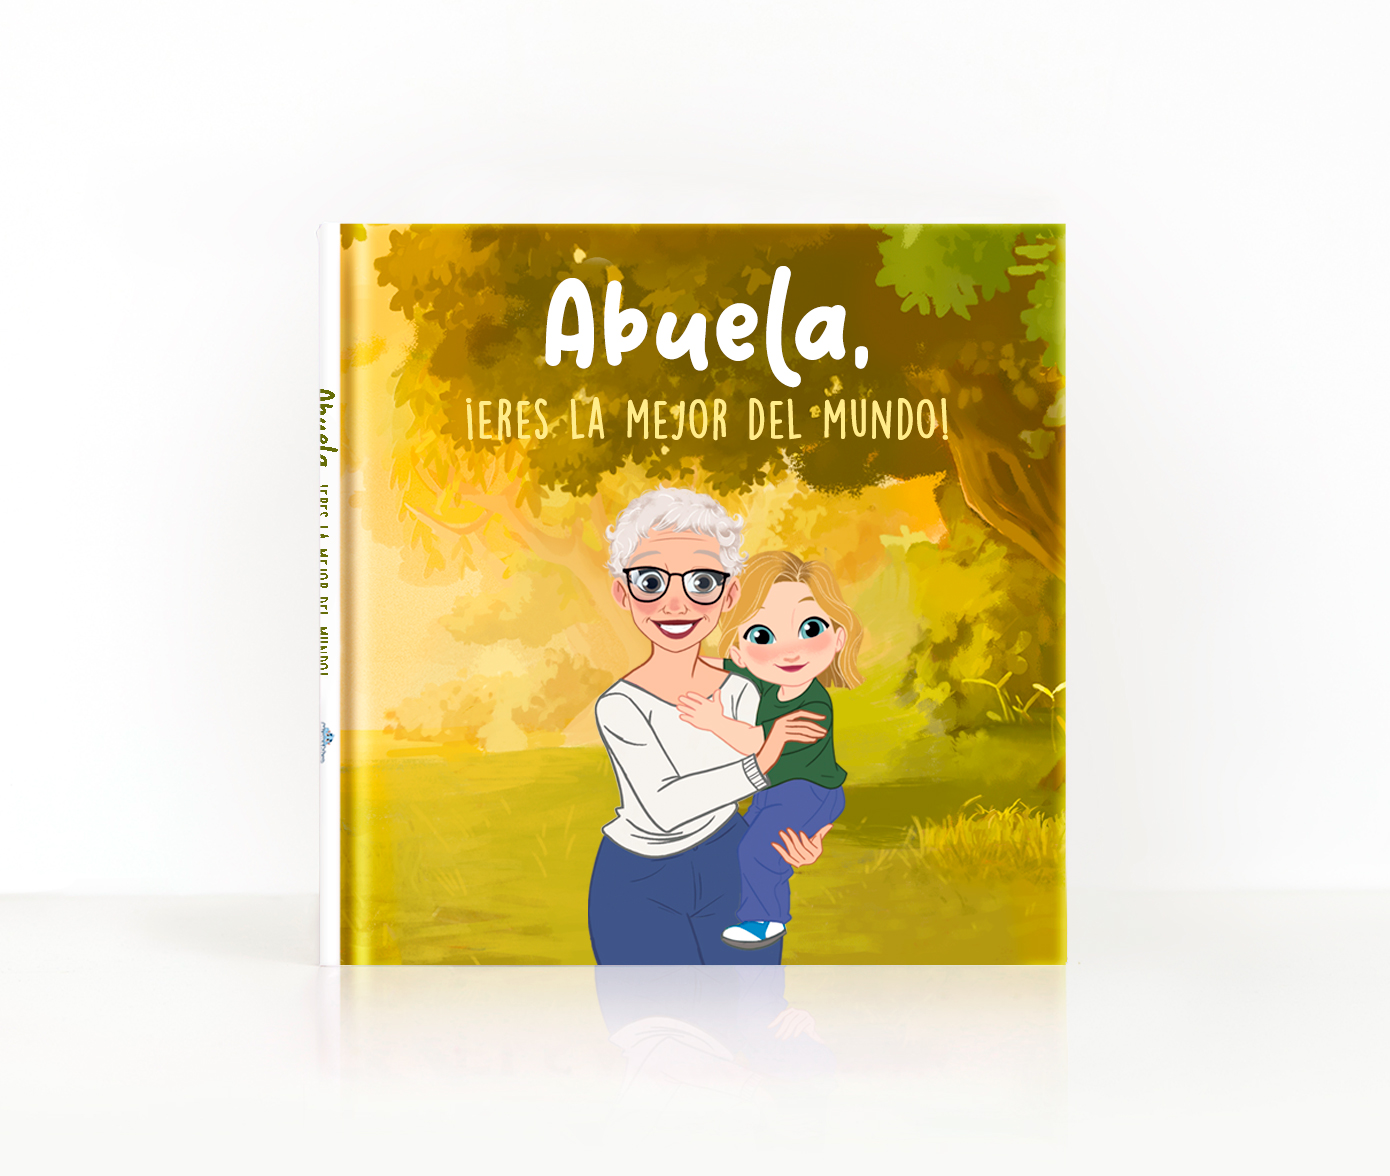 Libro Personalizado Para La Abuela Abuela ¡eres La Mejor Del Mundo 